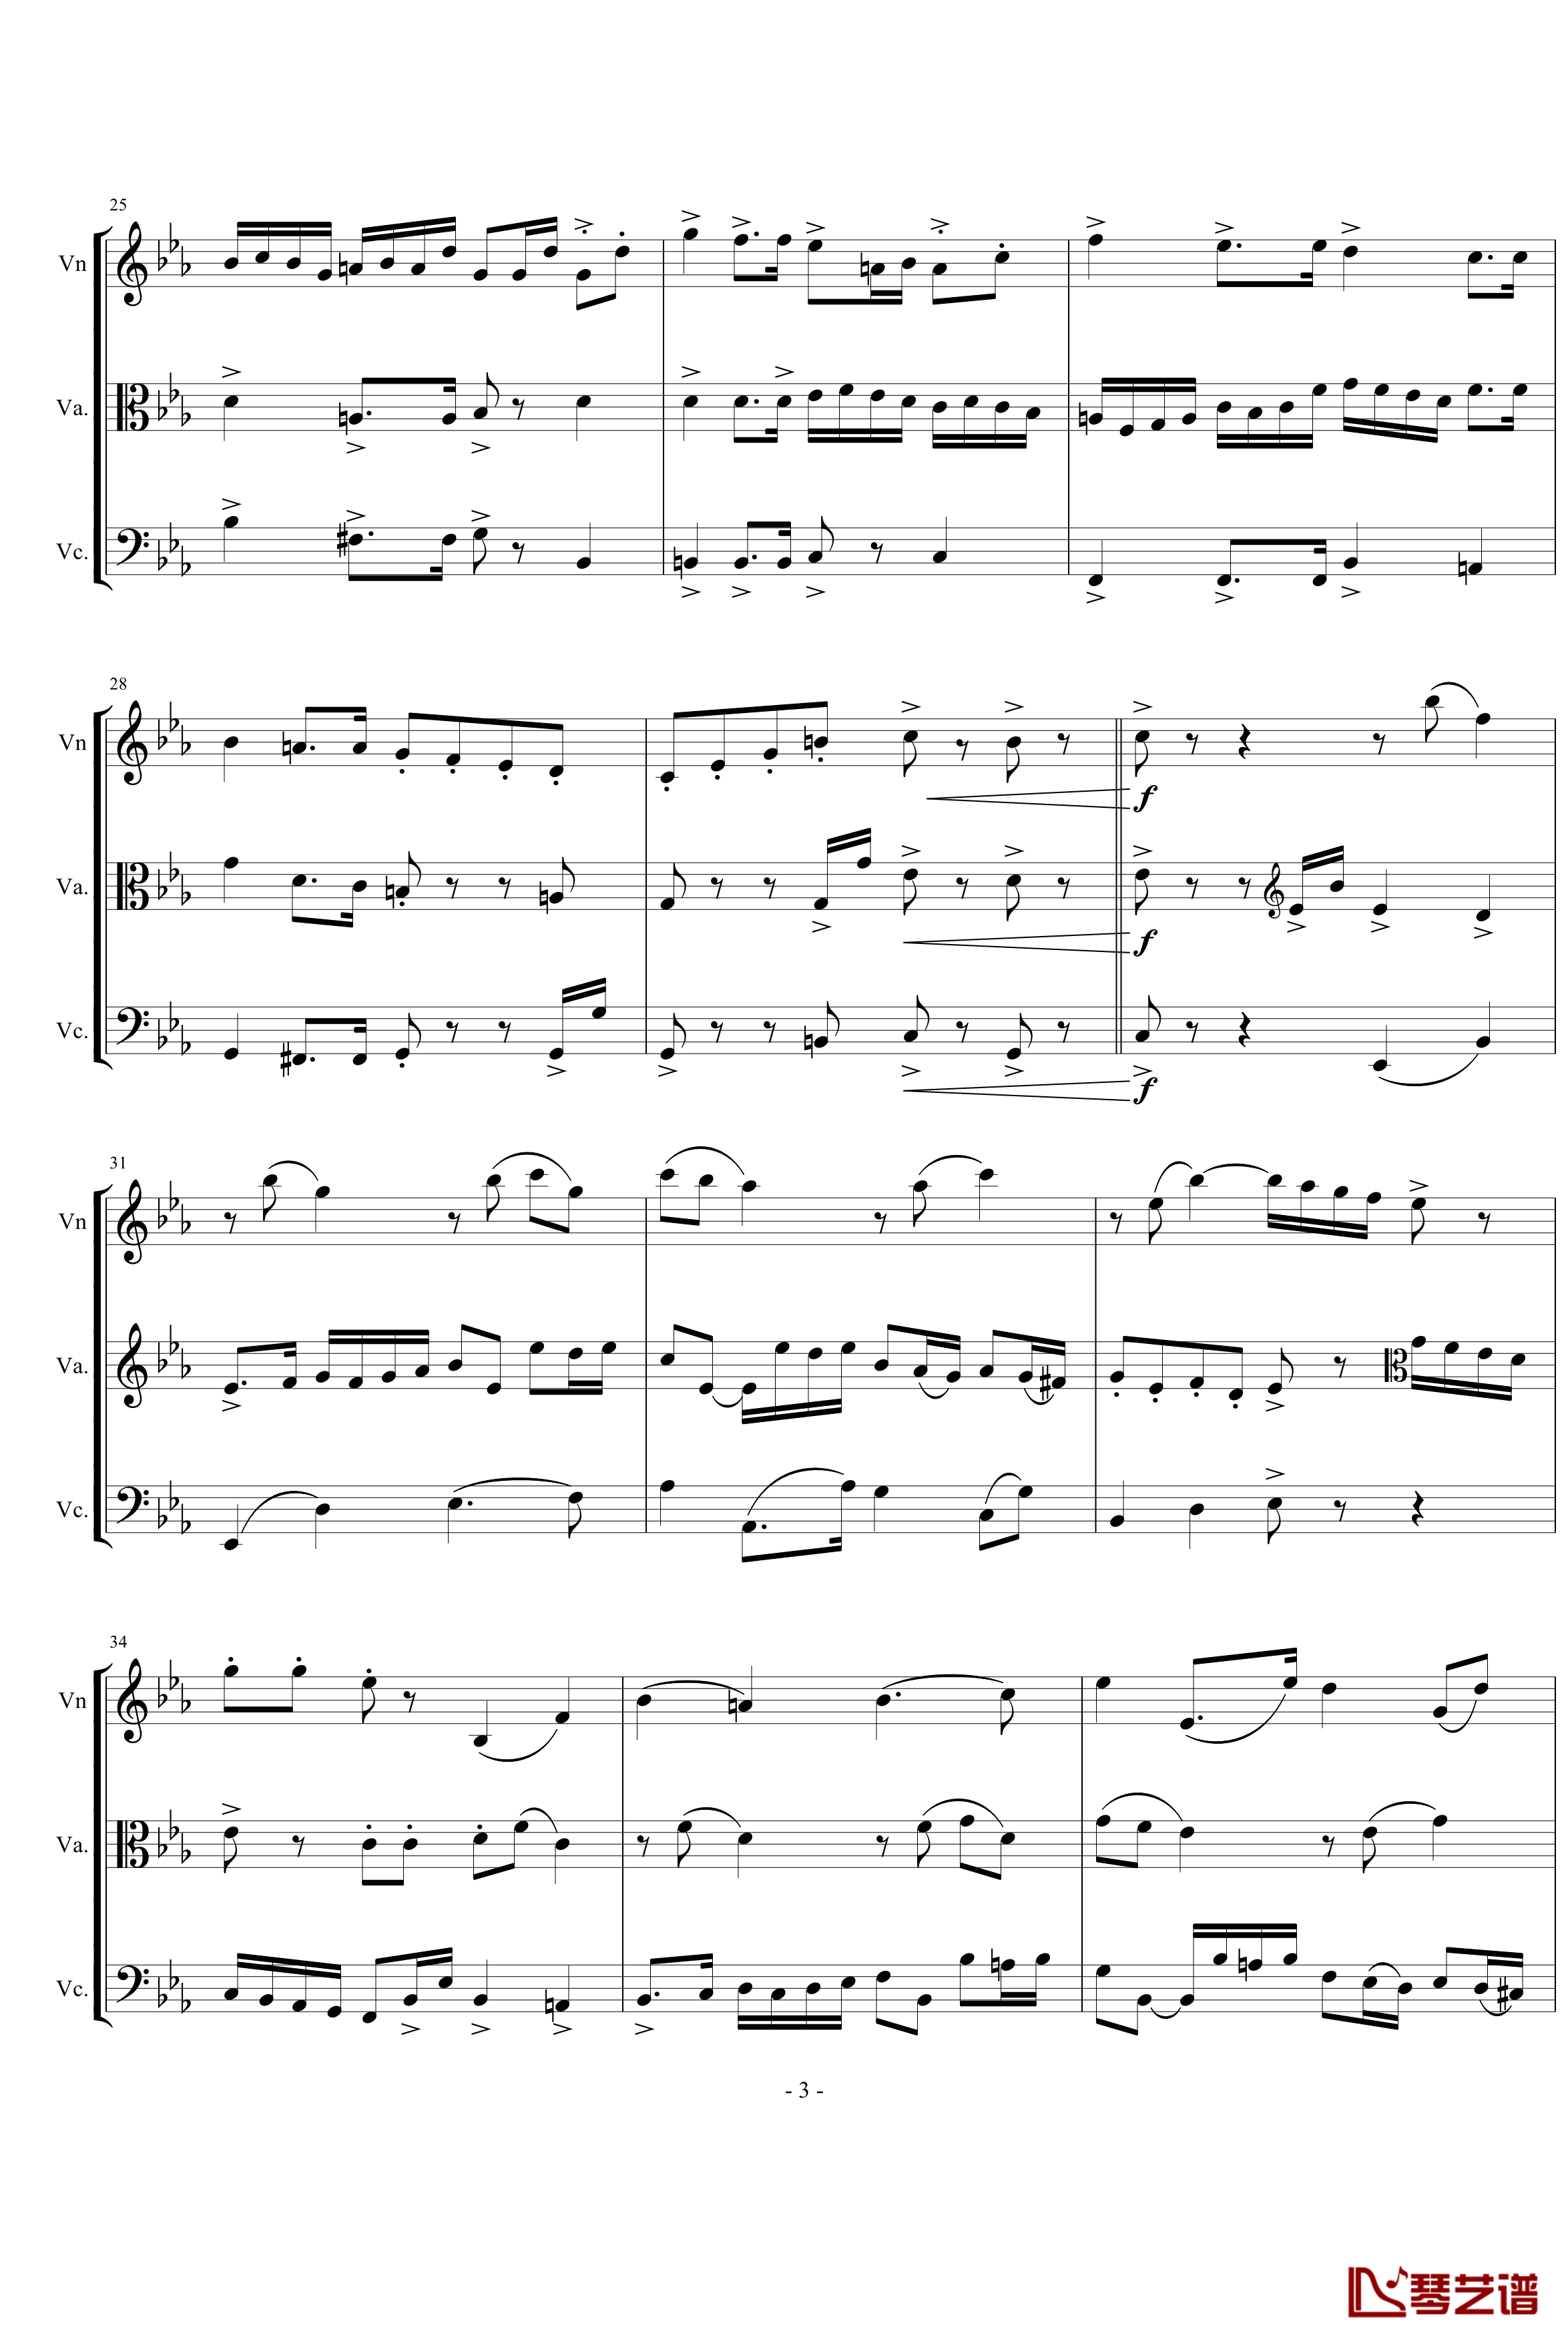 三声部赋格钢琴谱-为弦乐三重奏而作-琴辉3